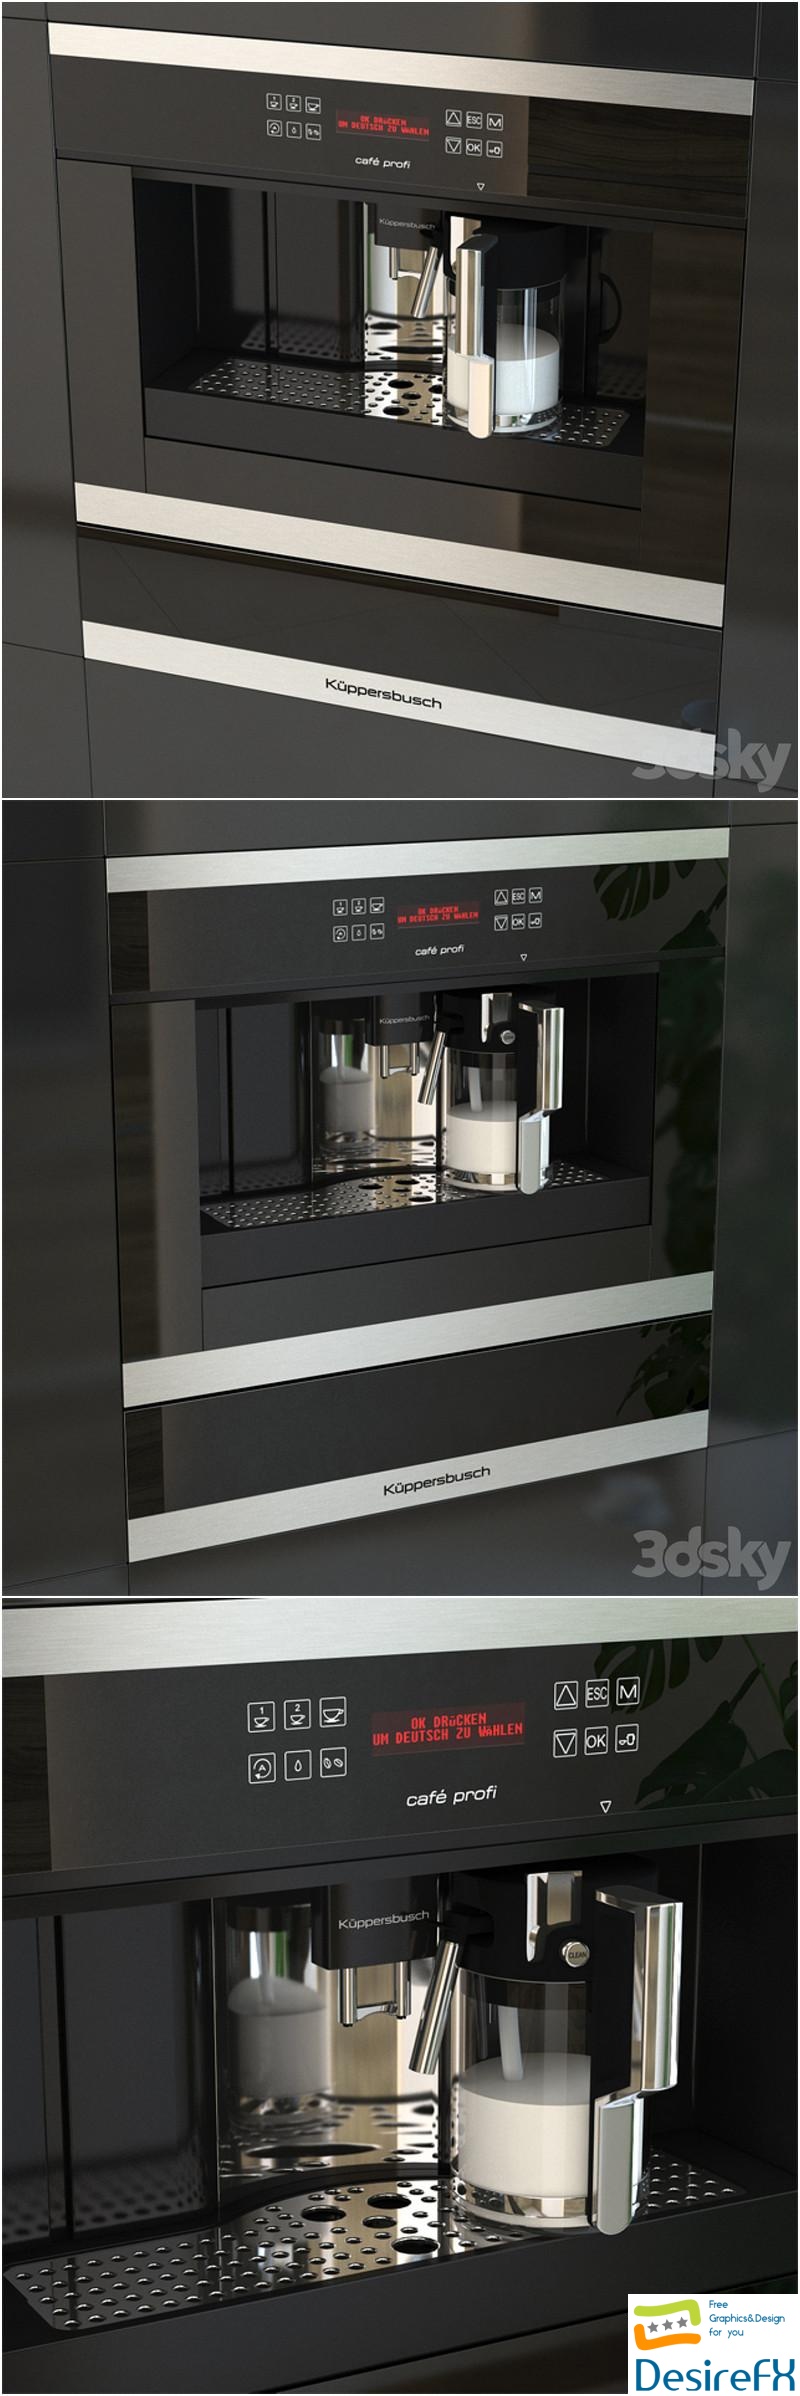 Black Coffee Machine EKV6500 Kuppersbusch 3D Model